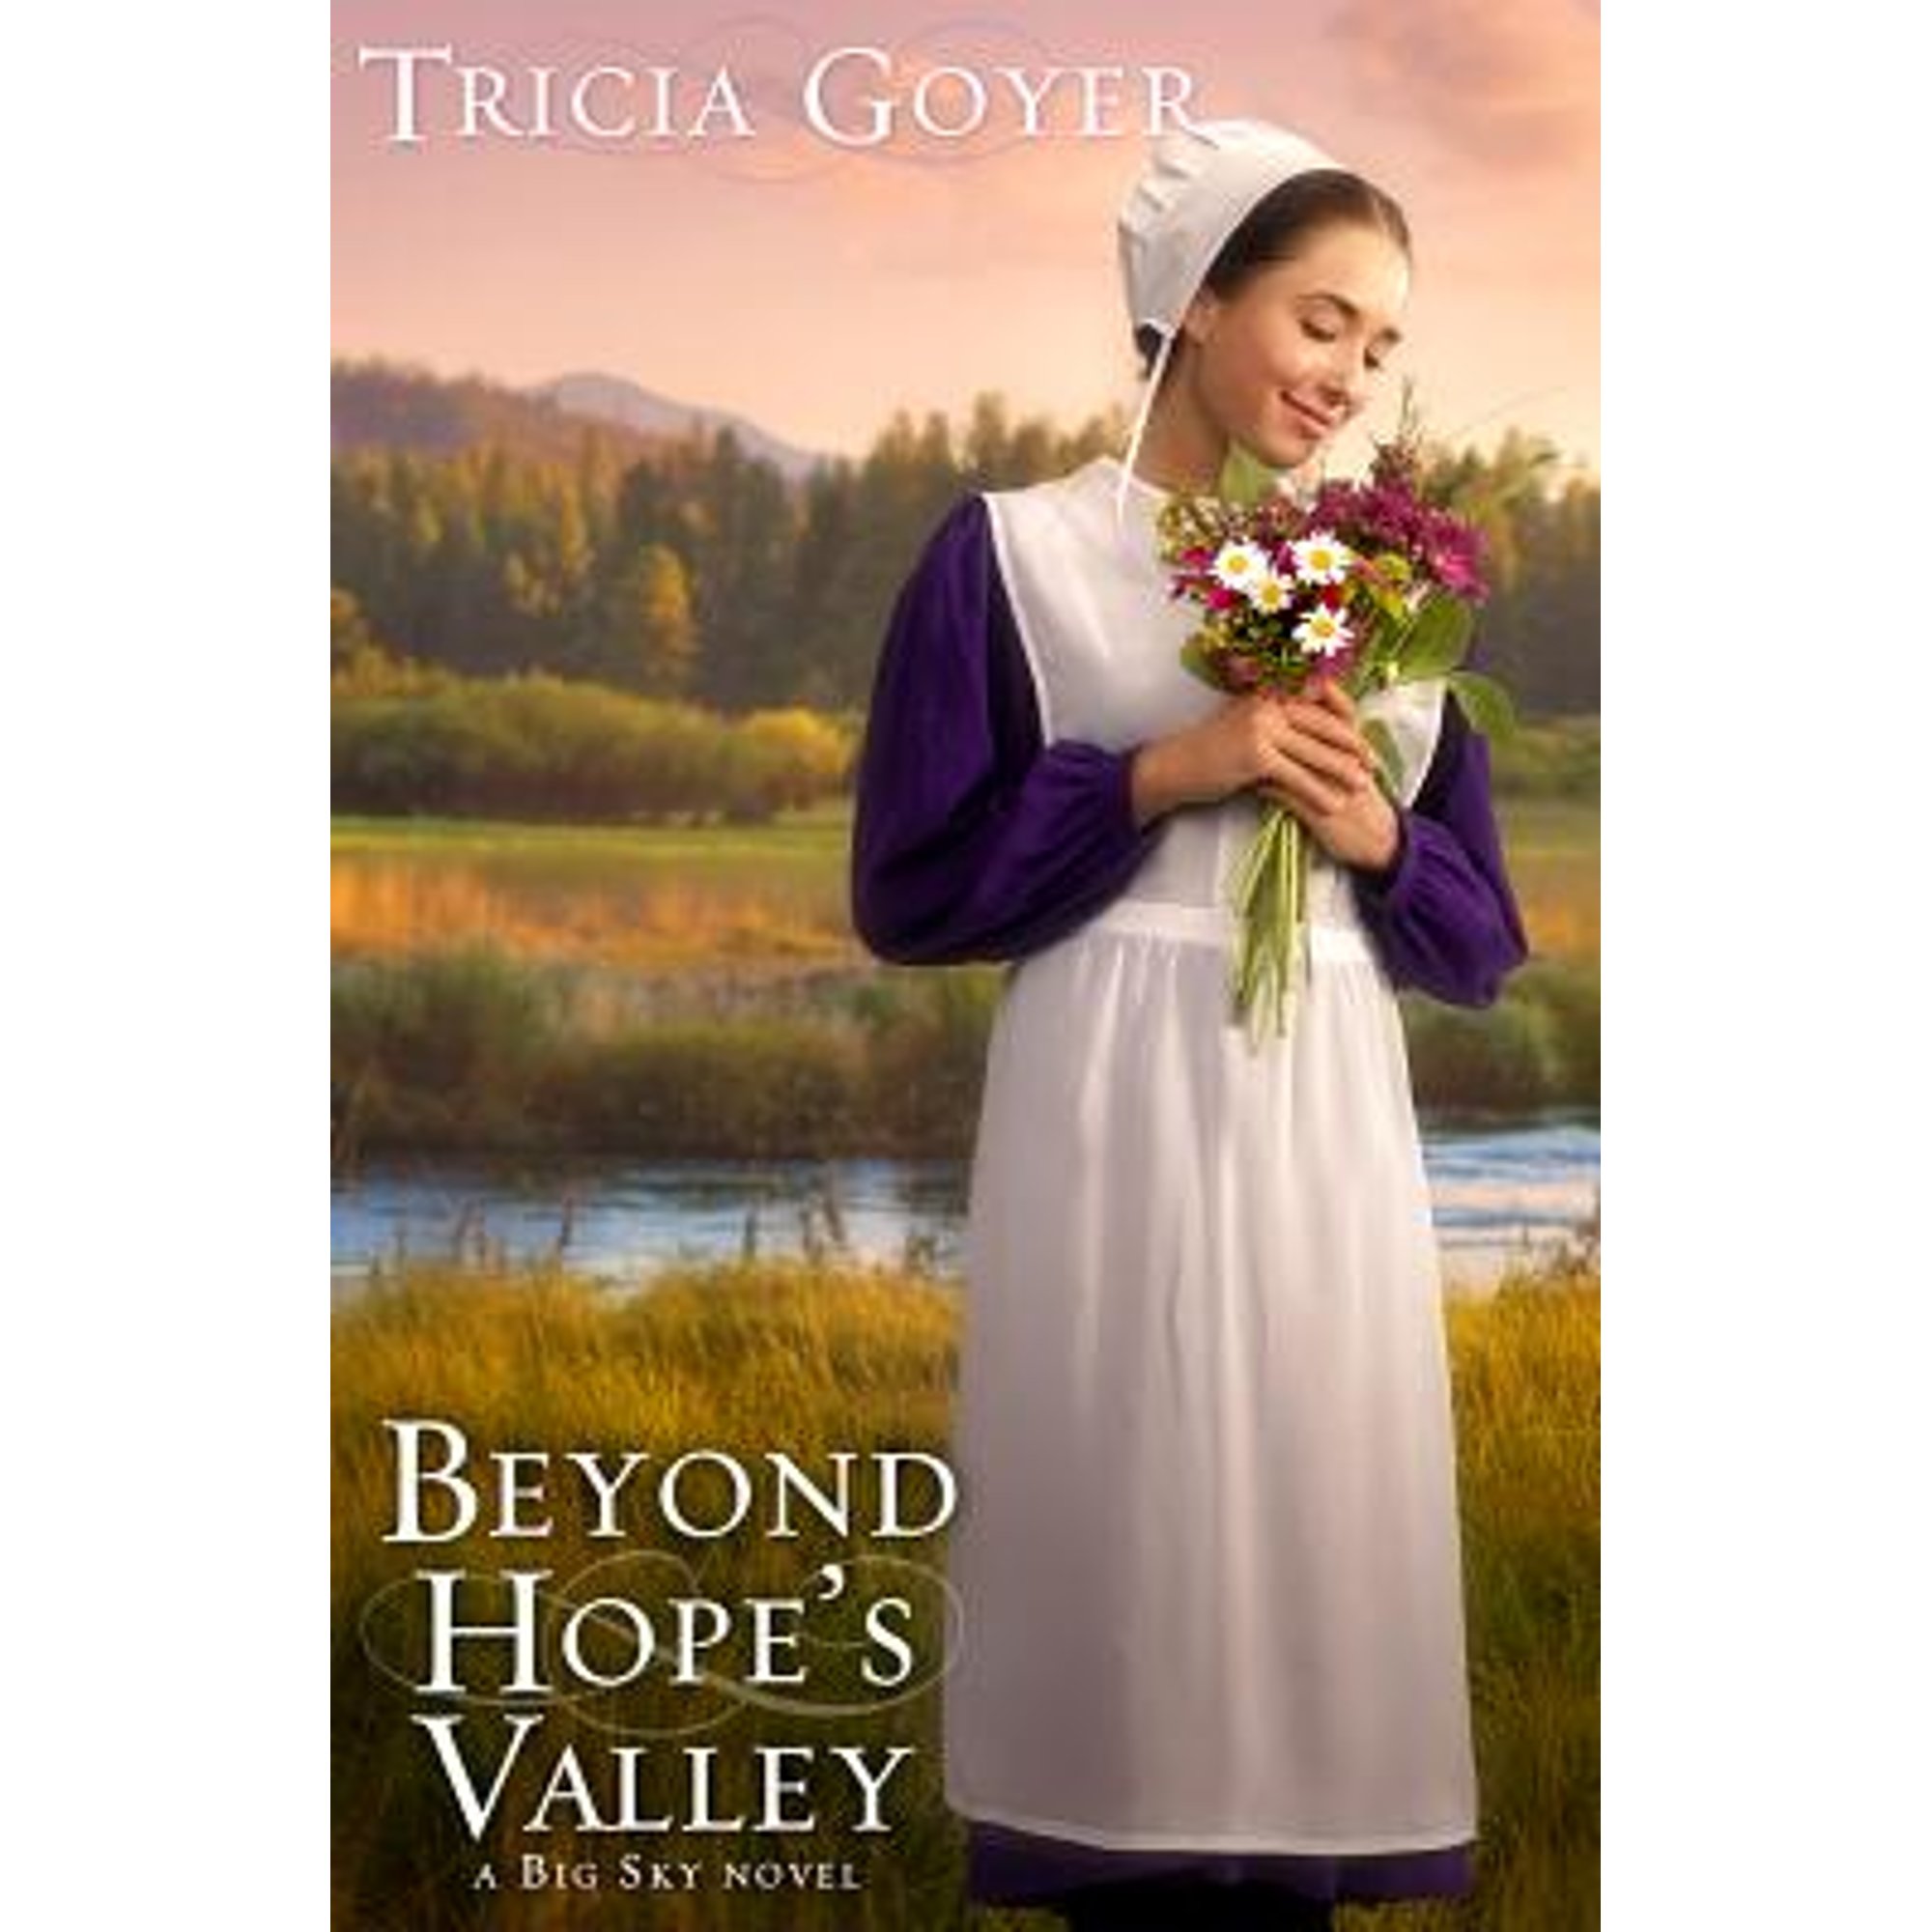 A Big Sky Novel: Beyond Hope's Valley : A Big Sky Novel (Paperback) - image 1 of 2